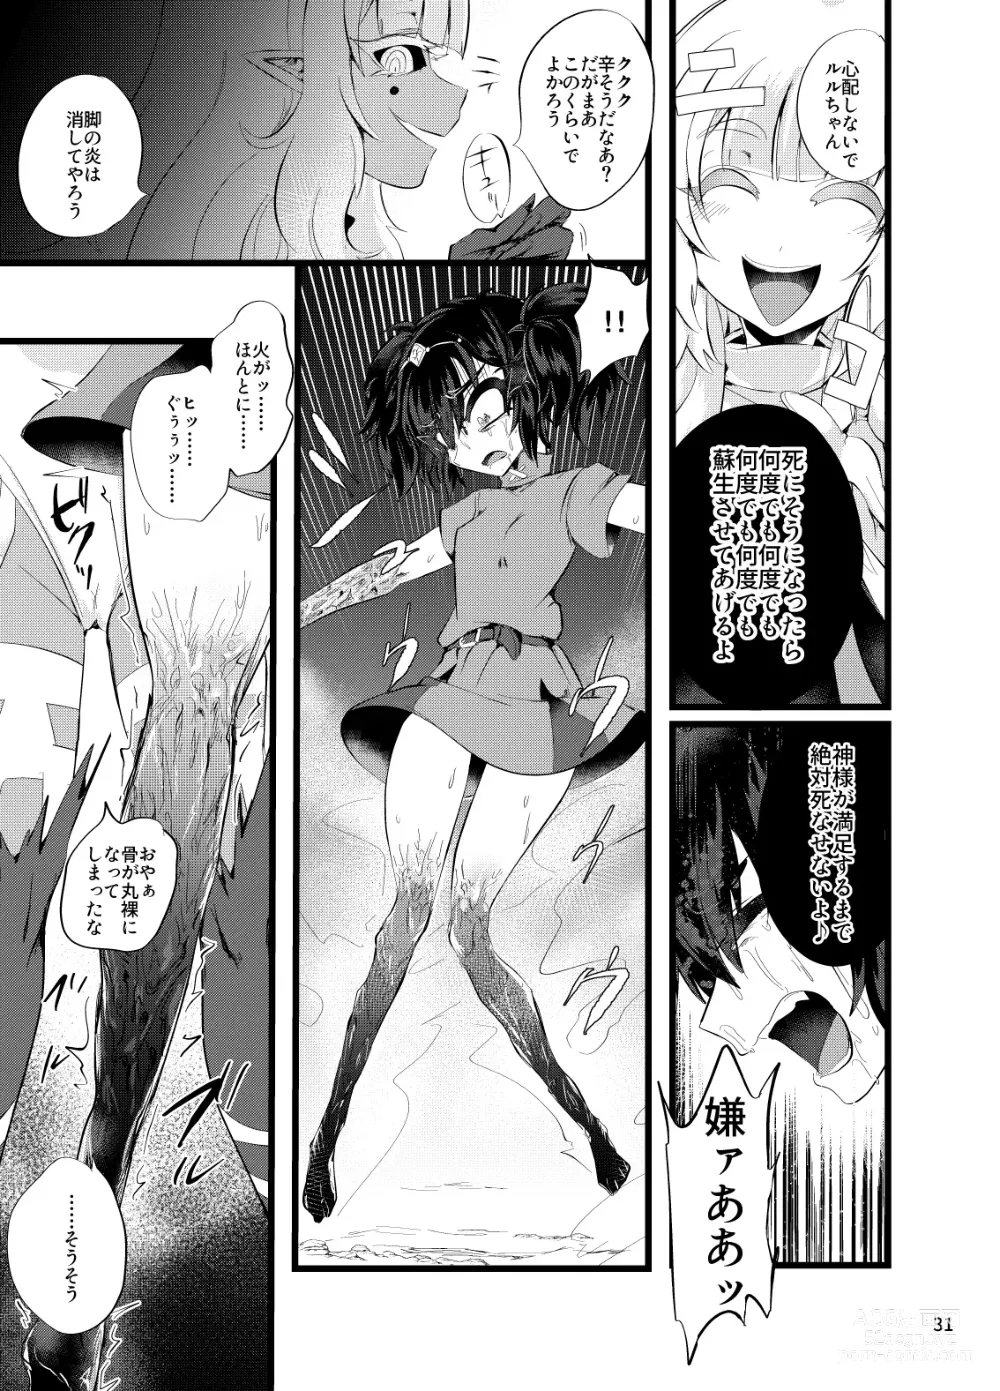 Page 32 of doujinshi Maen Yuugi